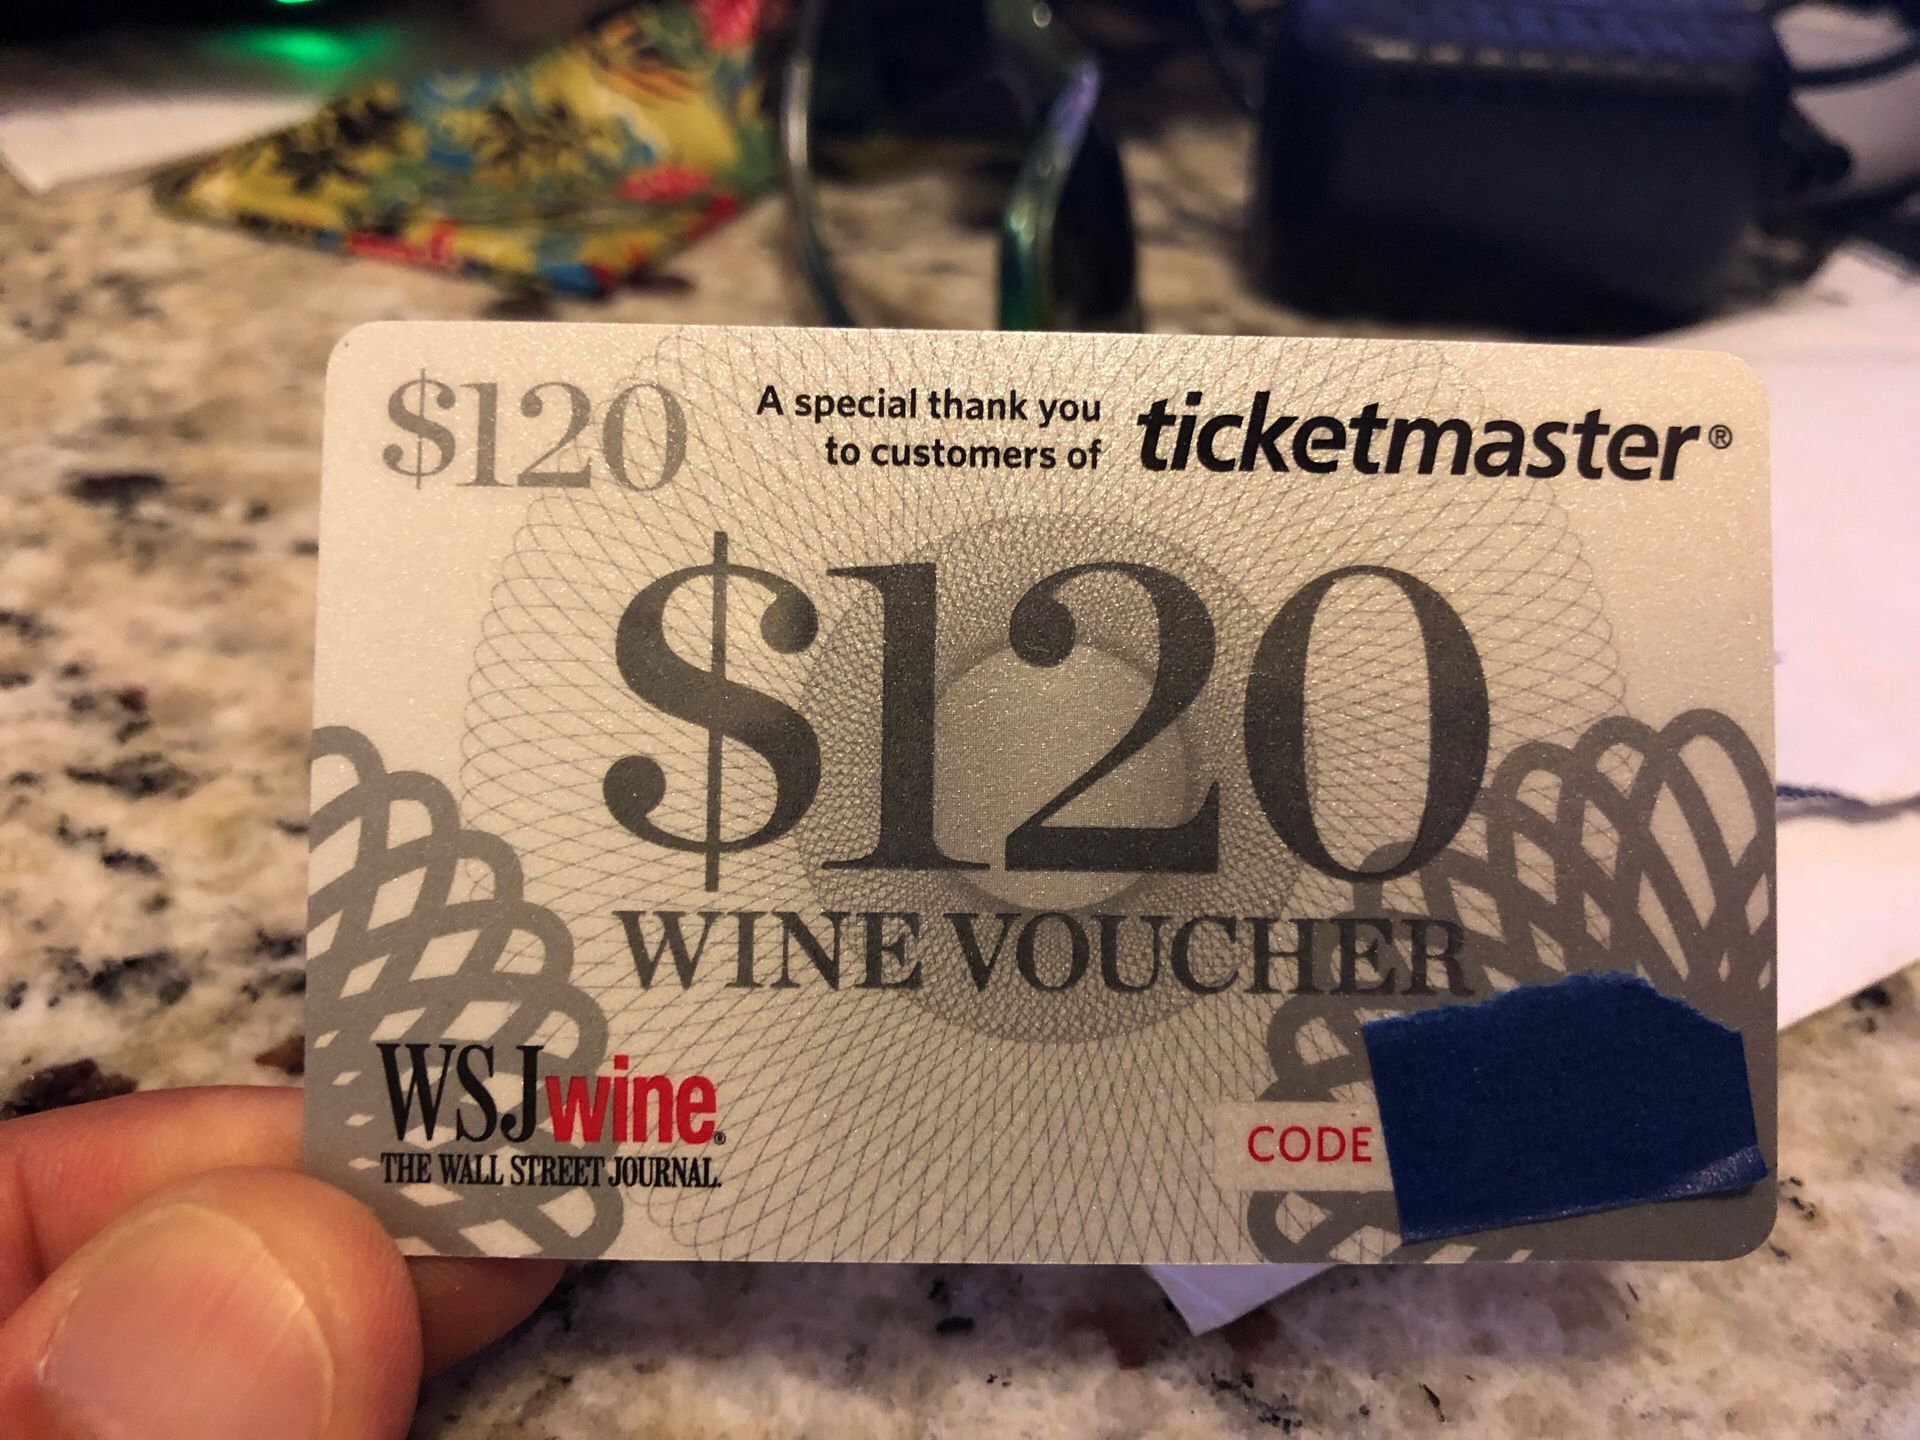 $120 voucher wine